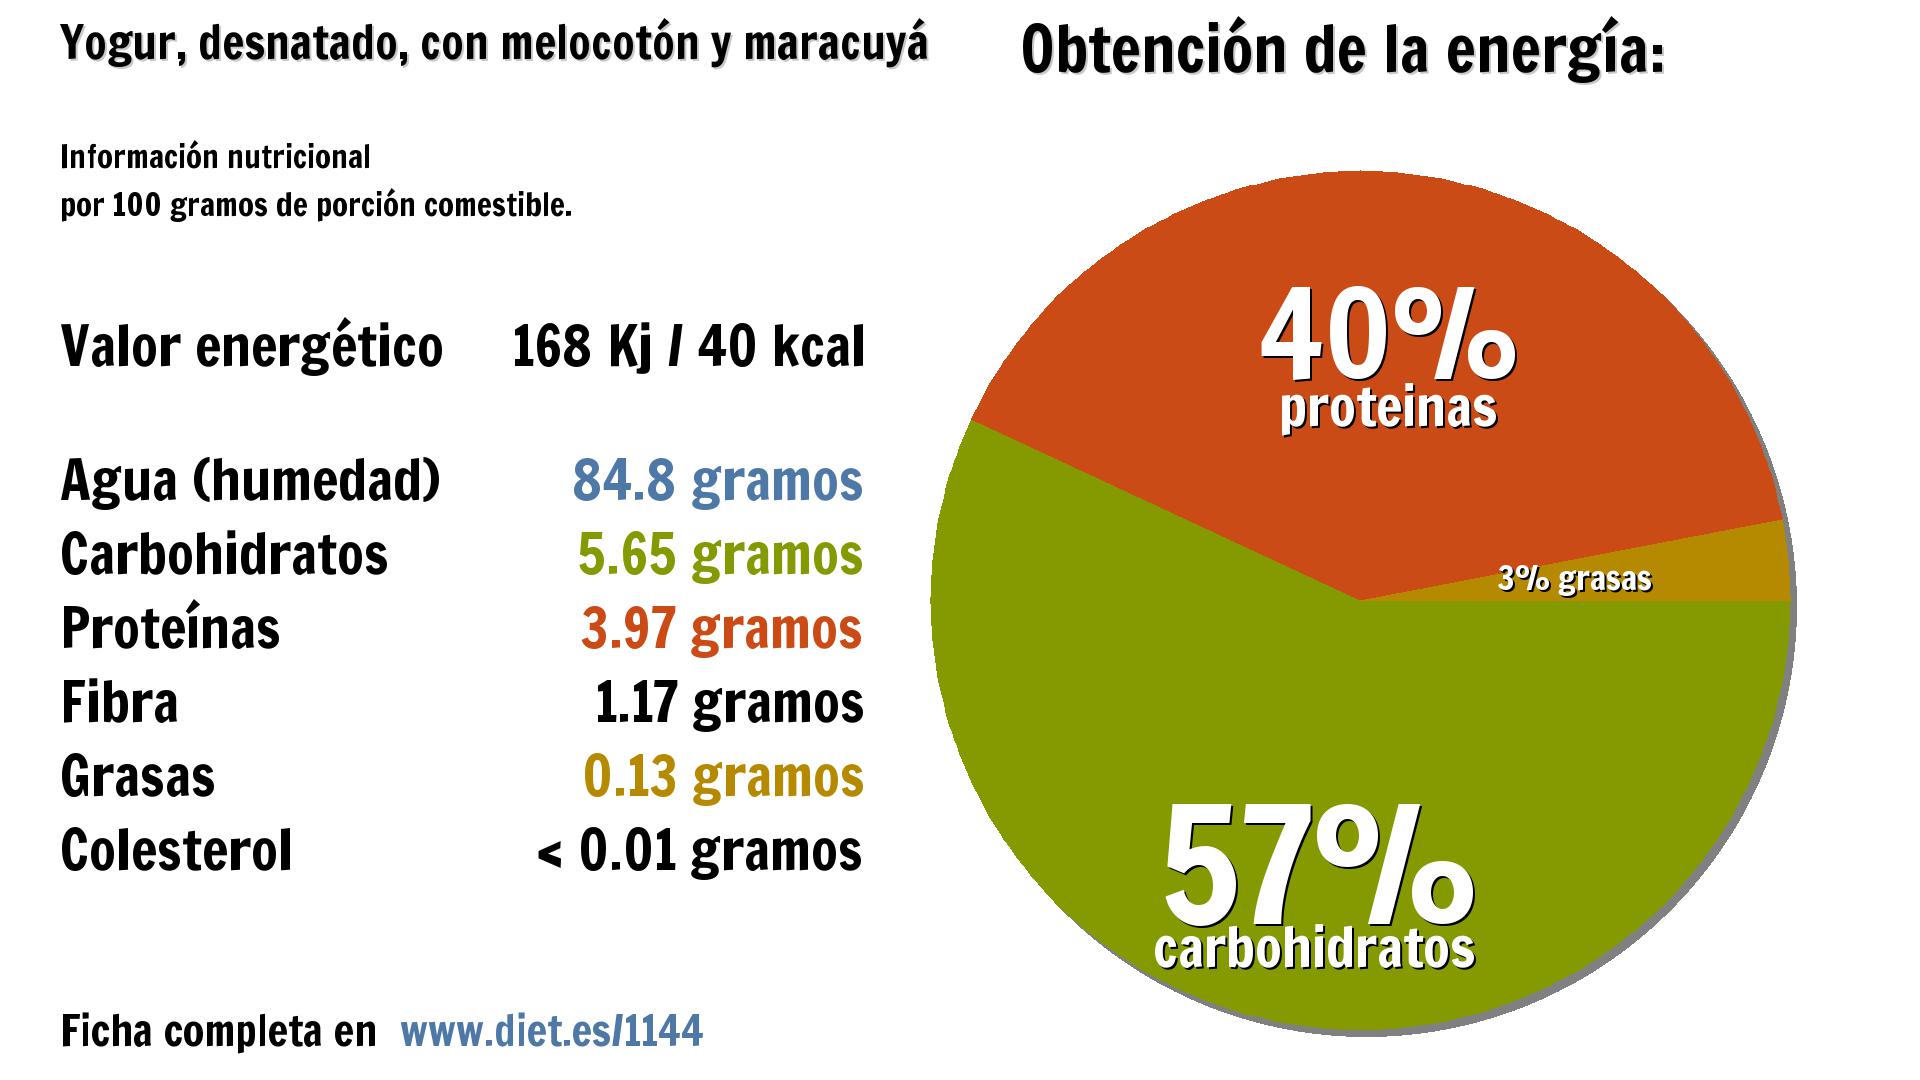 Yogur, desnatado, con melocotón y maracuyá: energía 168 Kj, agua 85 g., carbohidratos 6 g., proteínas 4 g. y fibra 1 g.